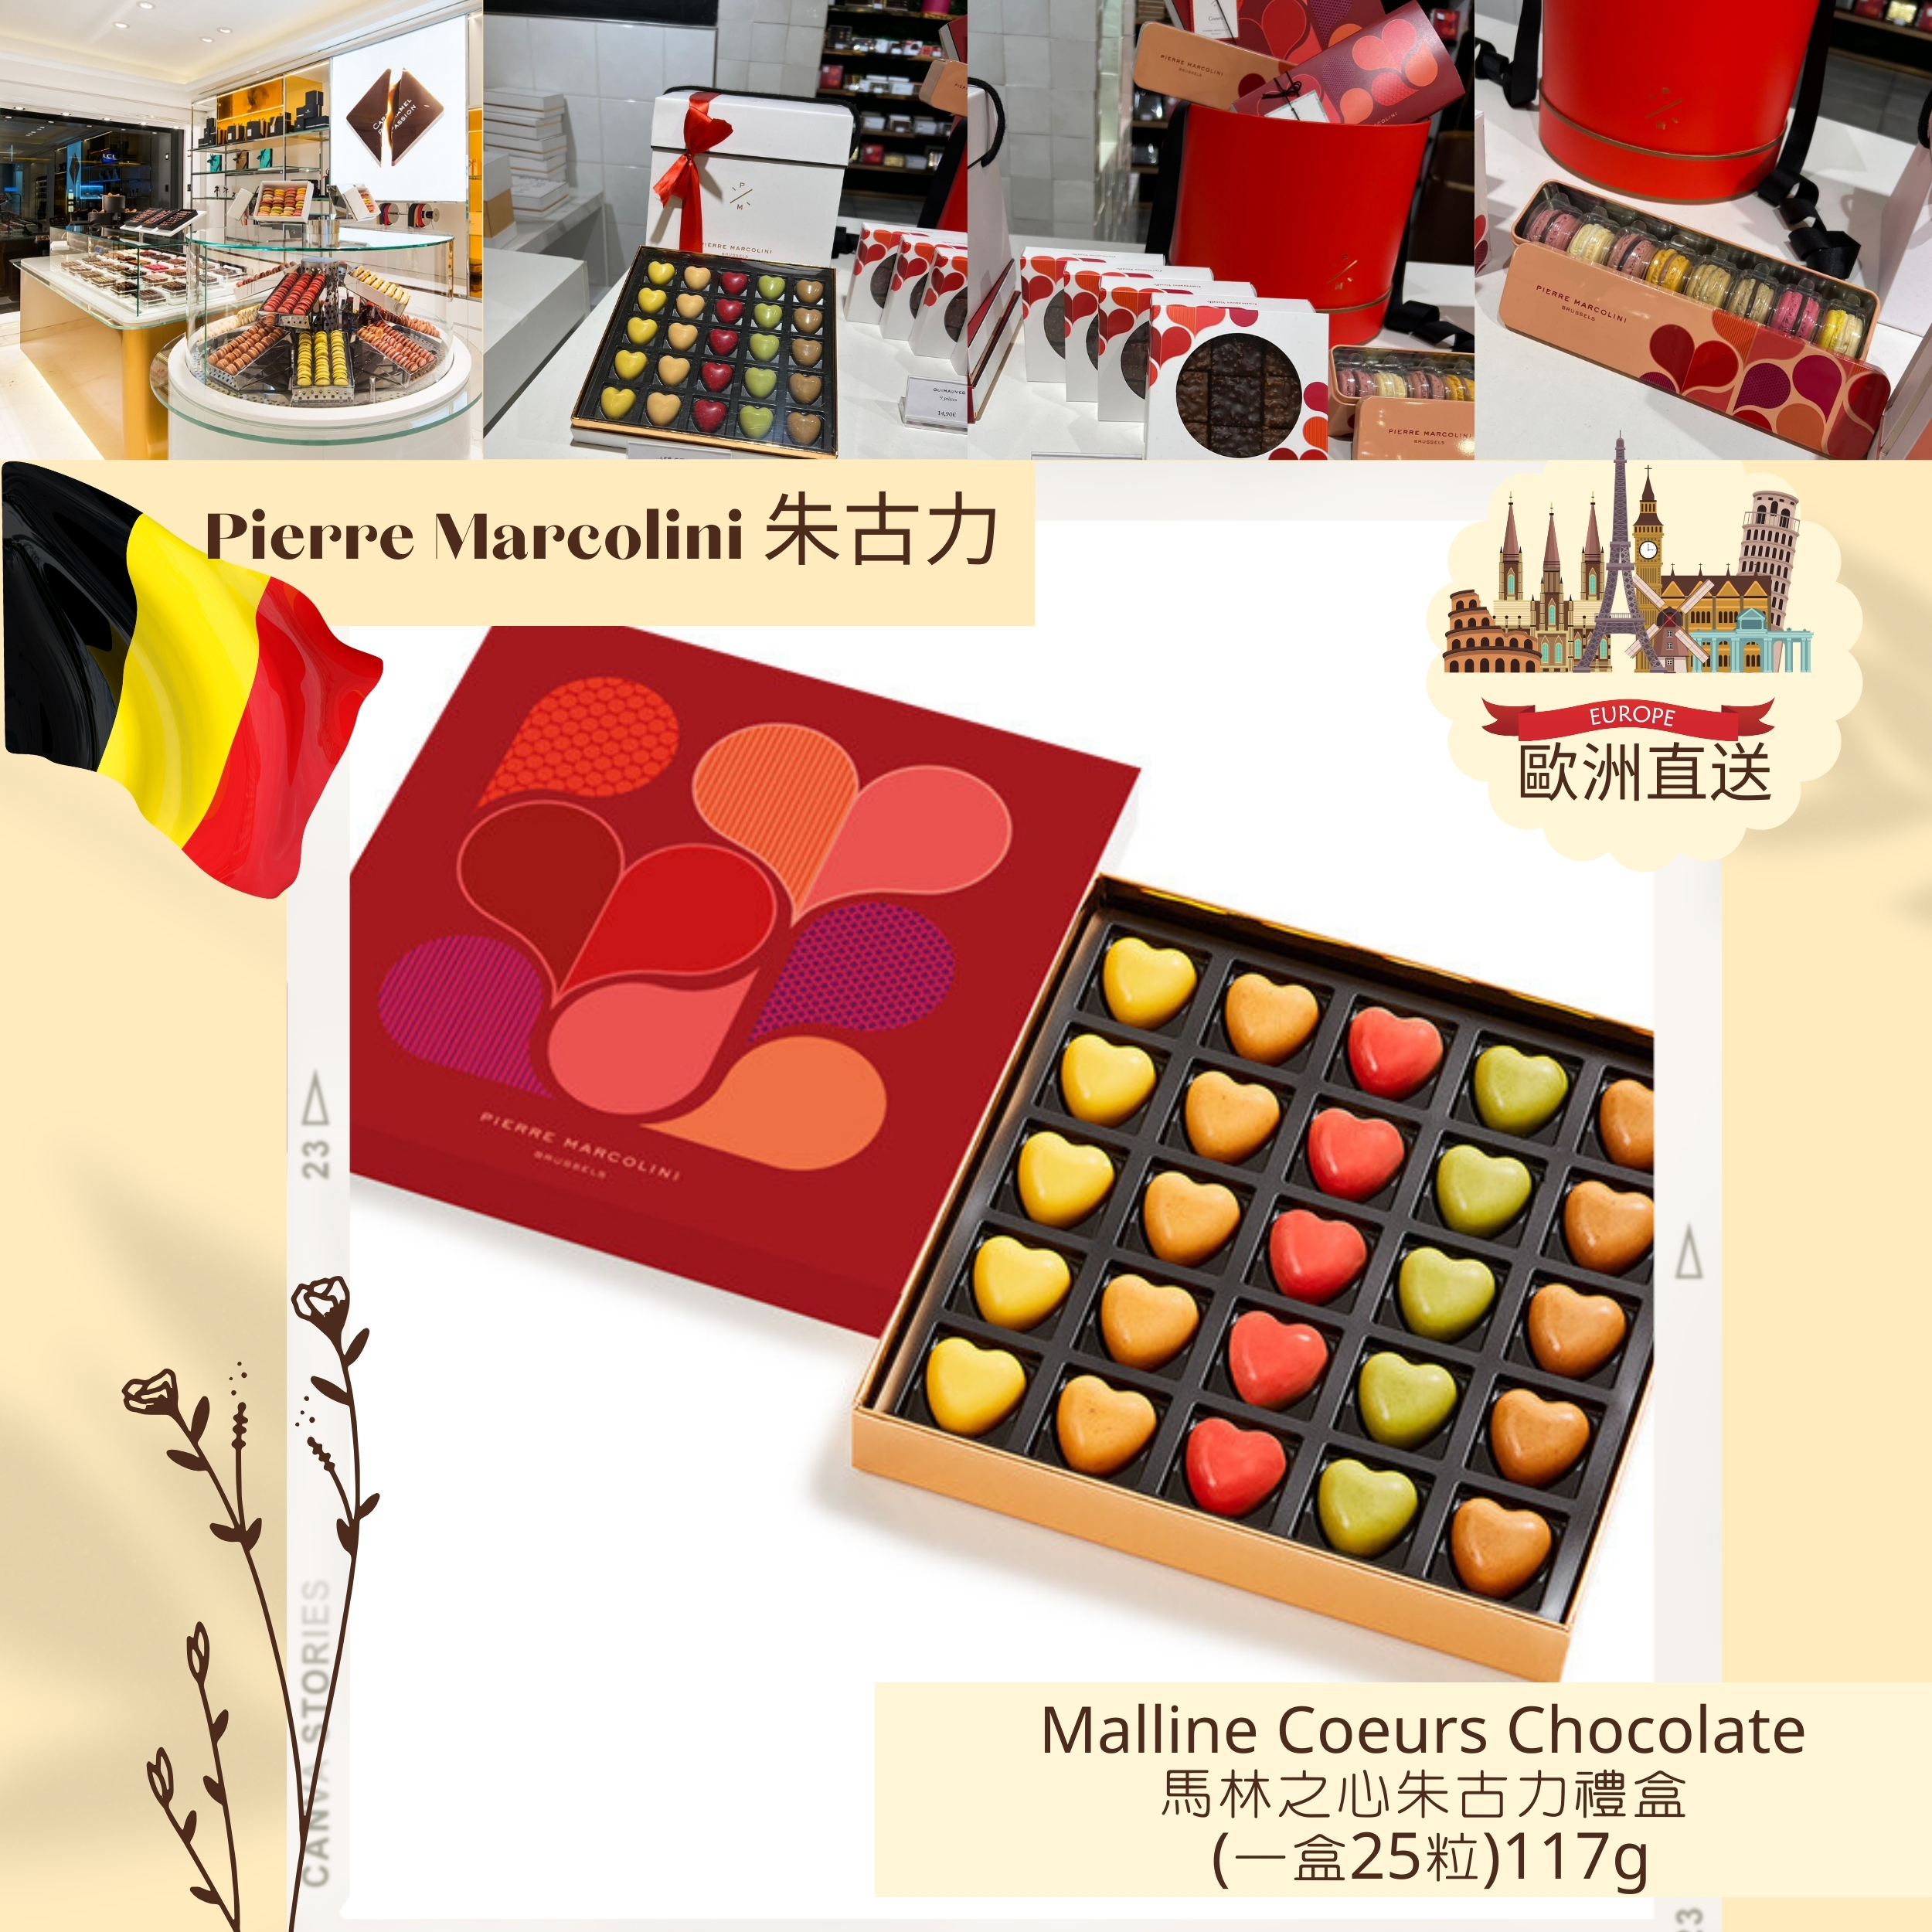 Pierre Marcolini 比利時頂級朱古力品牌 -Malline Coeurs  Chocolate 馬林之心朱古力禮盒 (一盒25粒)117g |  情人節限定  | 情人節用一盒朱古力分享愛